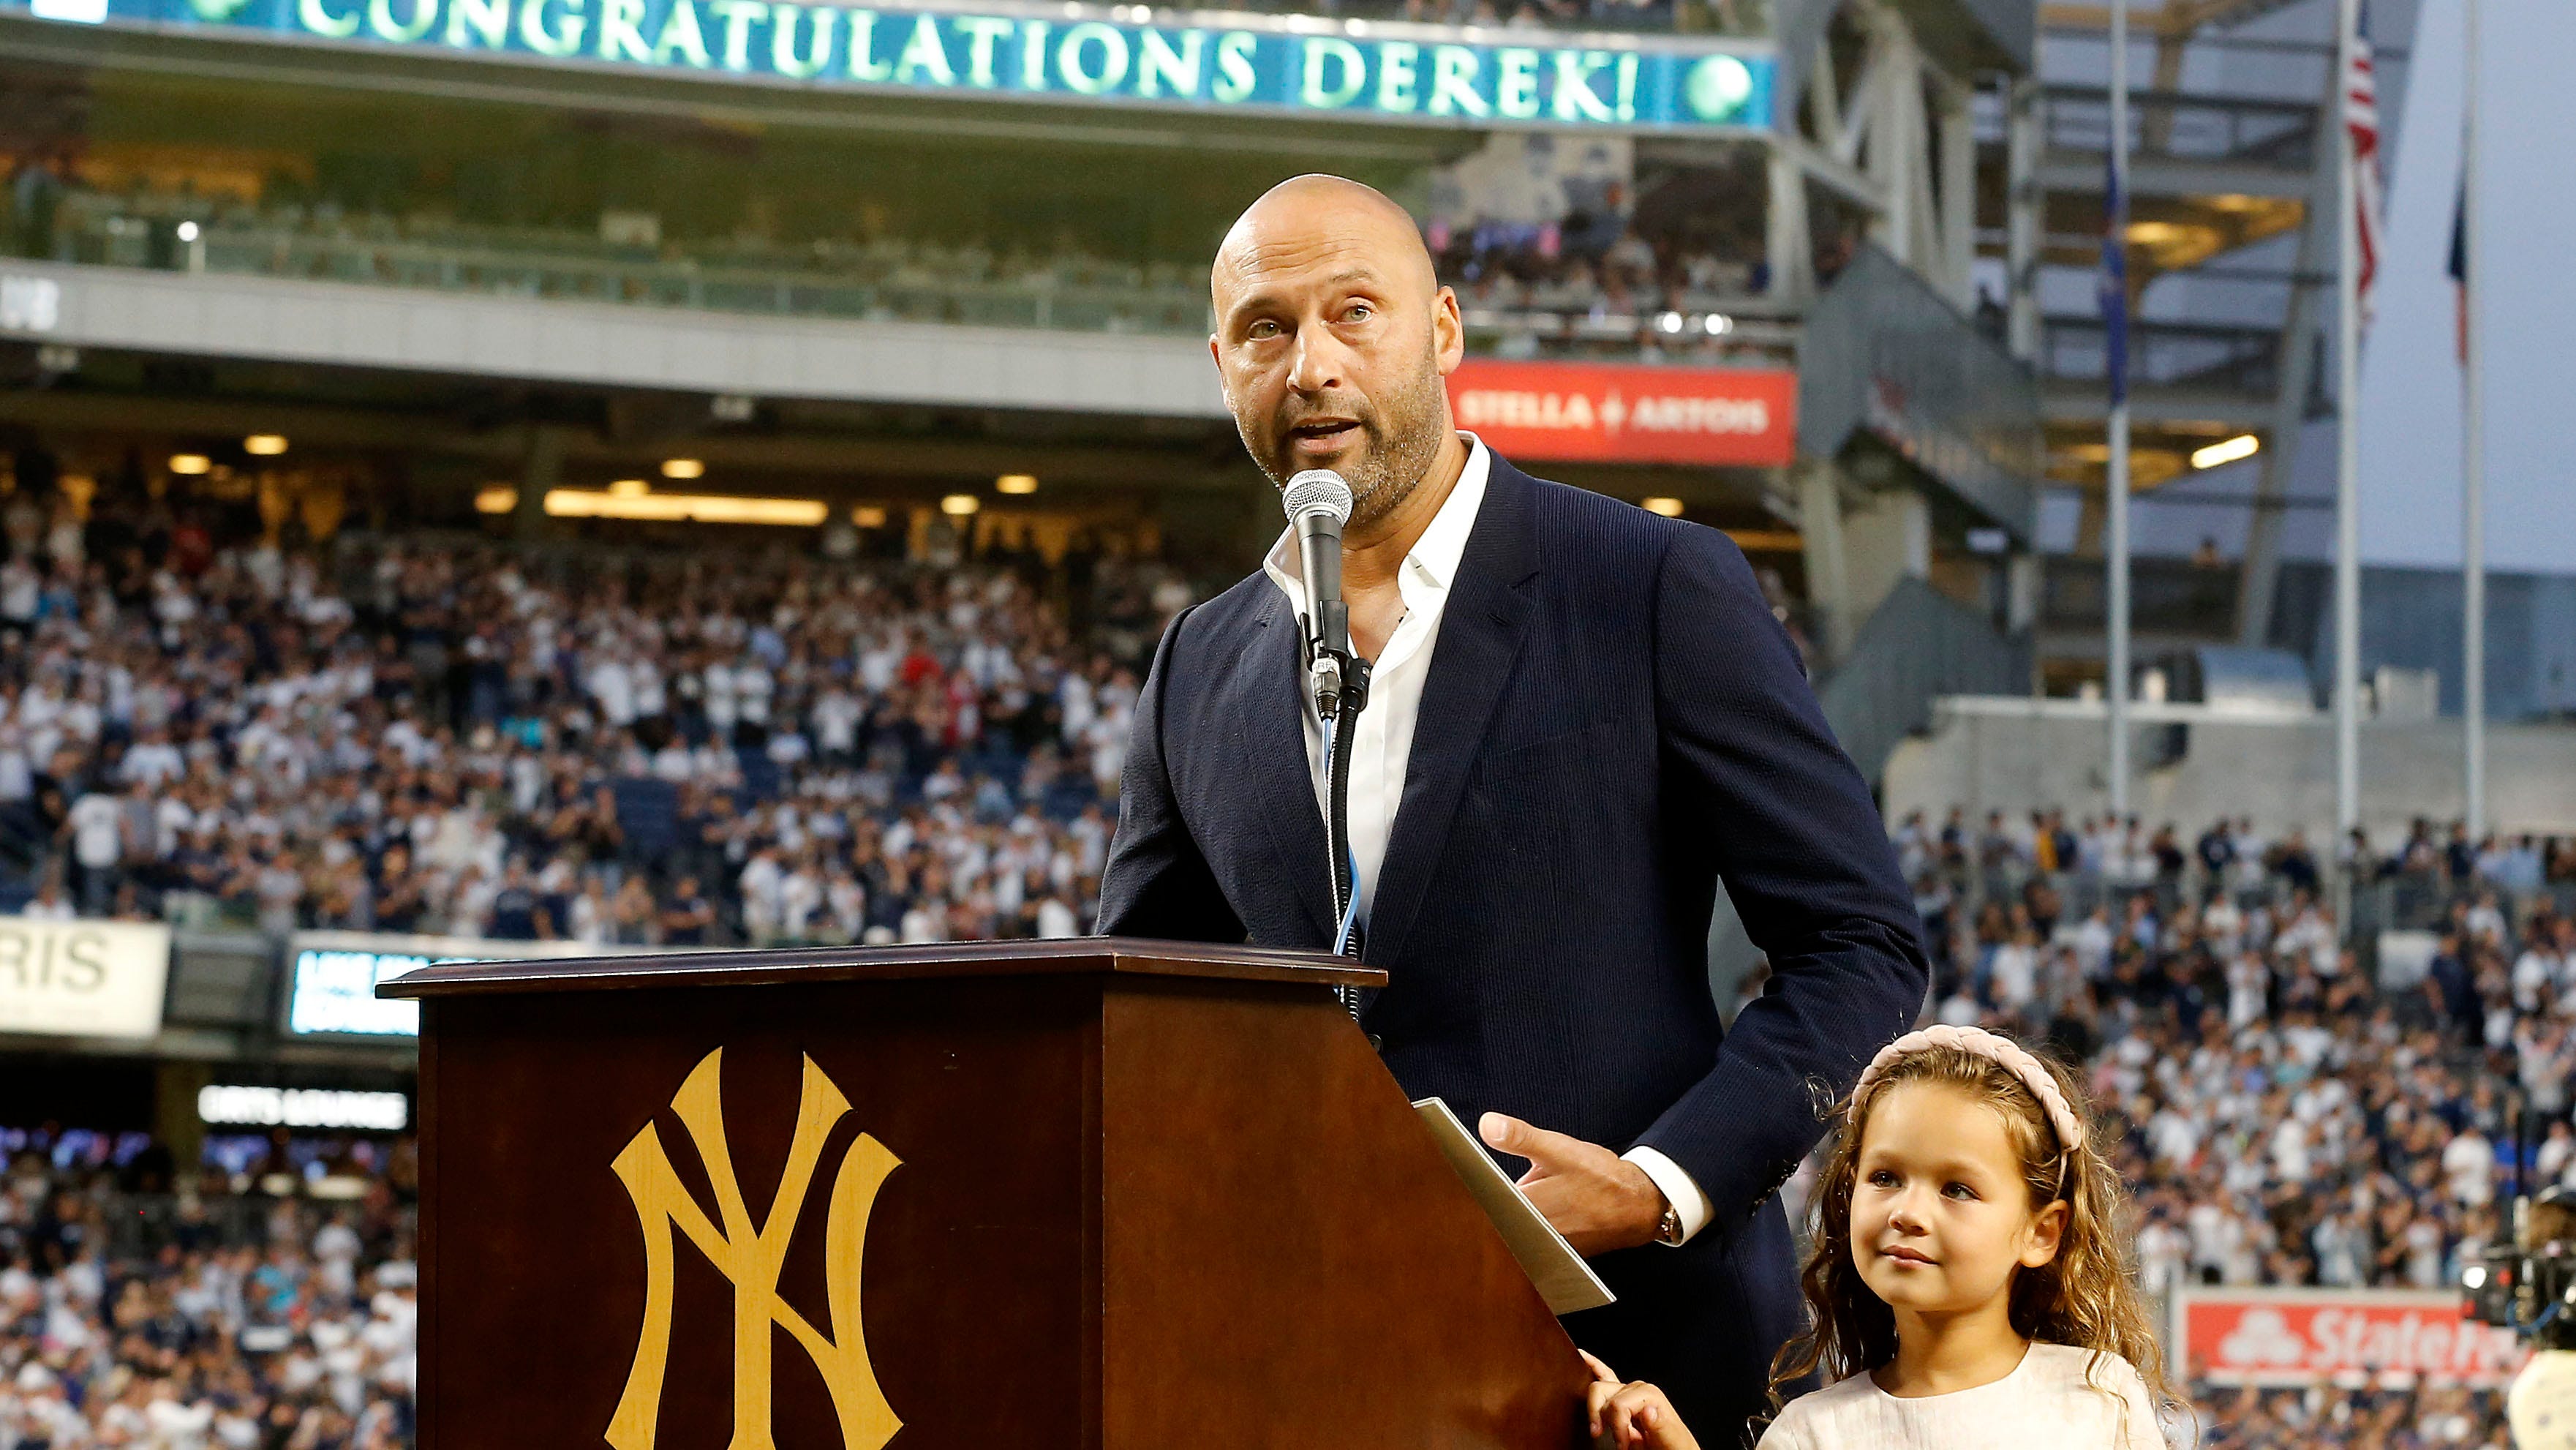 Yankees' Derek Jeter is new face of video game 